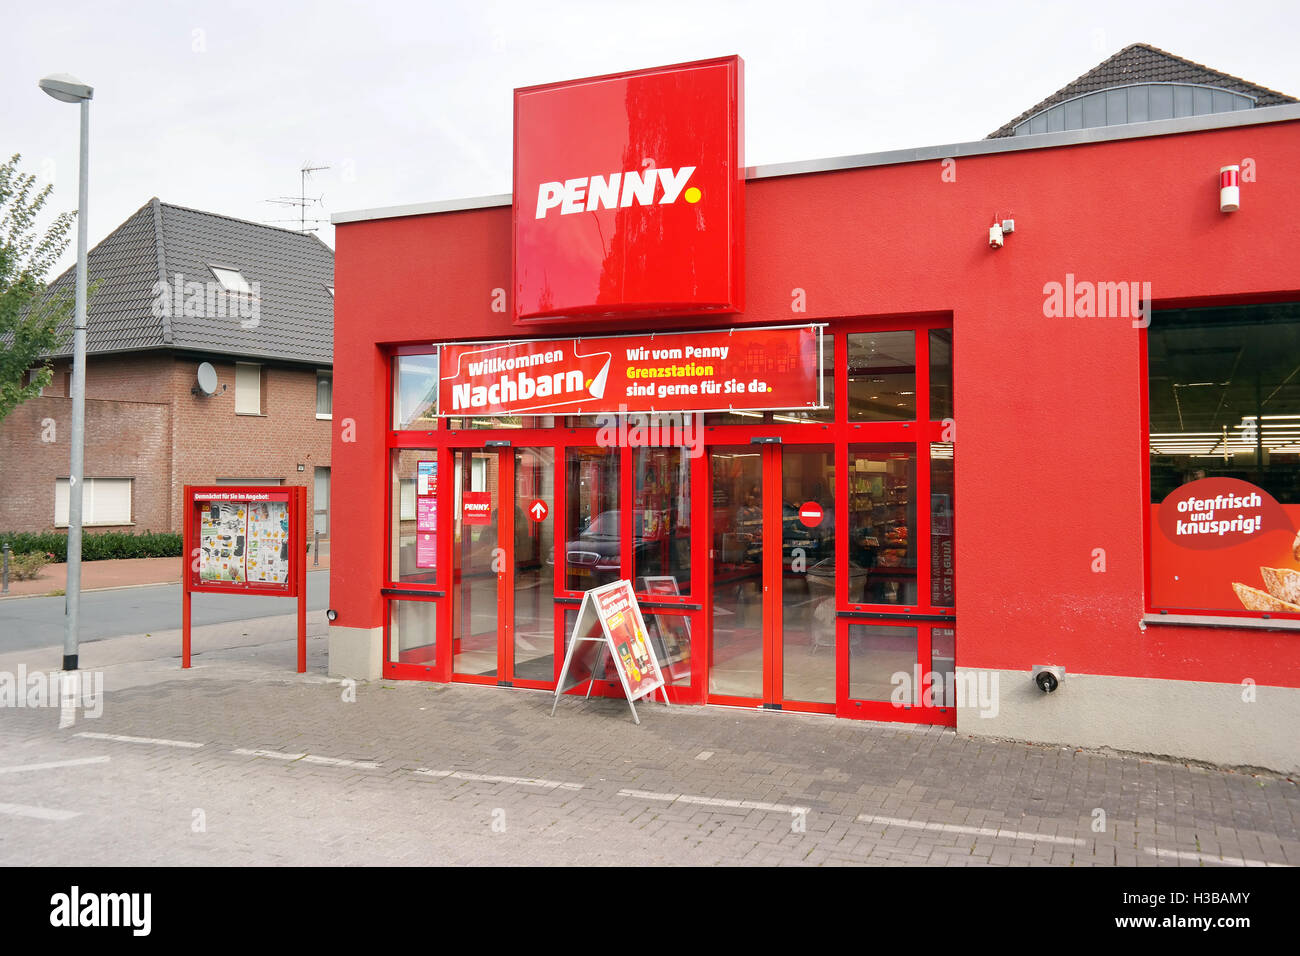 Entrée de Penny commode supermarché au Néerlandais - frontière allemande. Banque D'Images